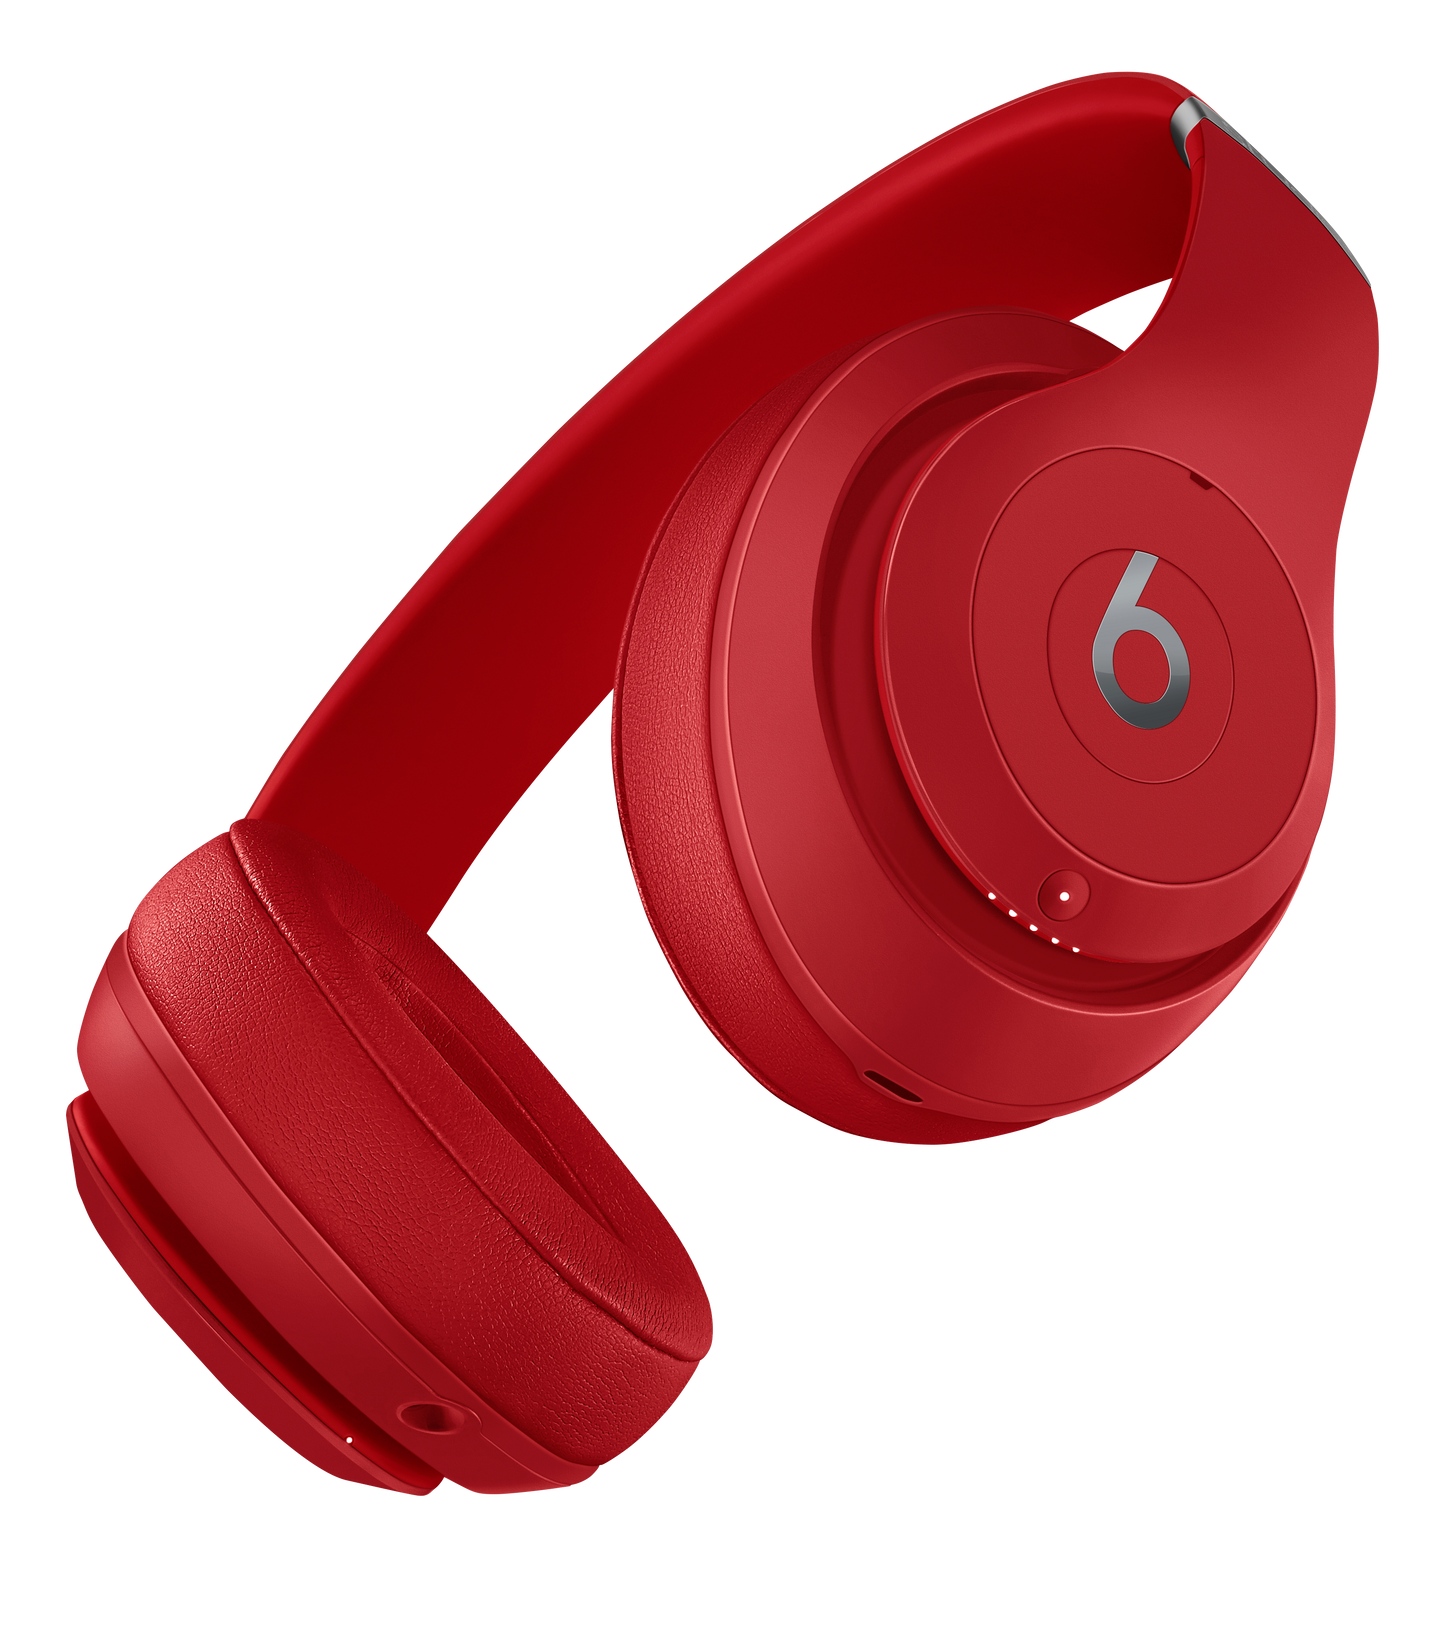 Beats Studio3 Wireless Over_Ear Headphones - Red